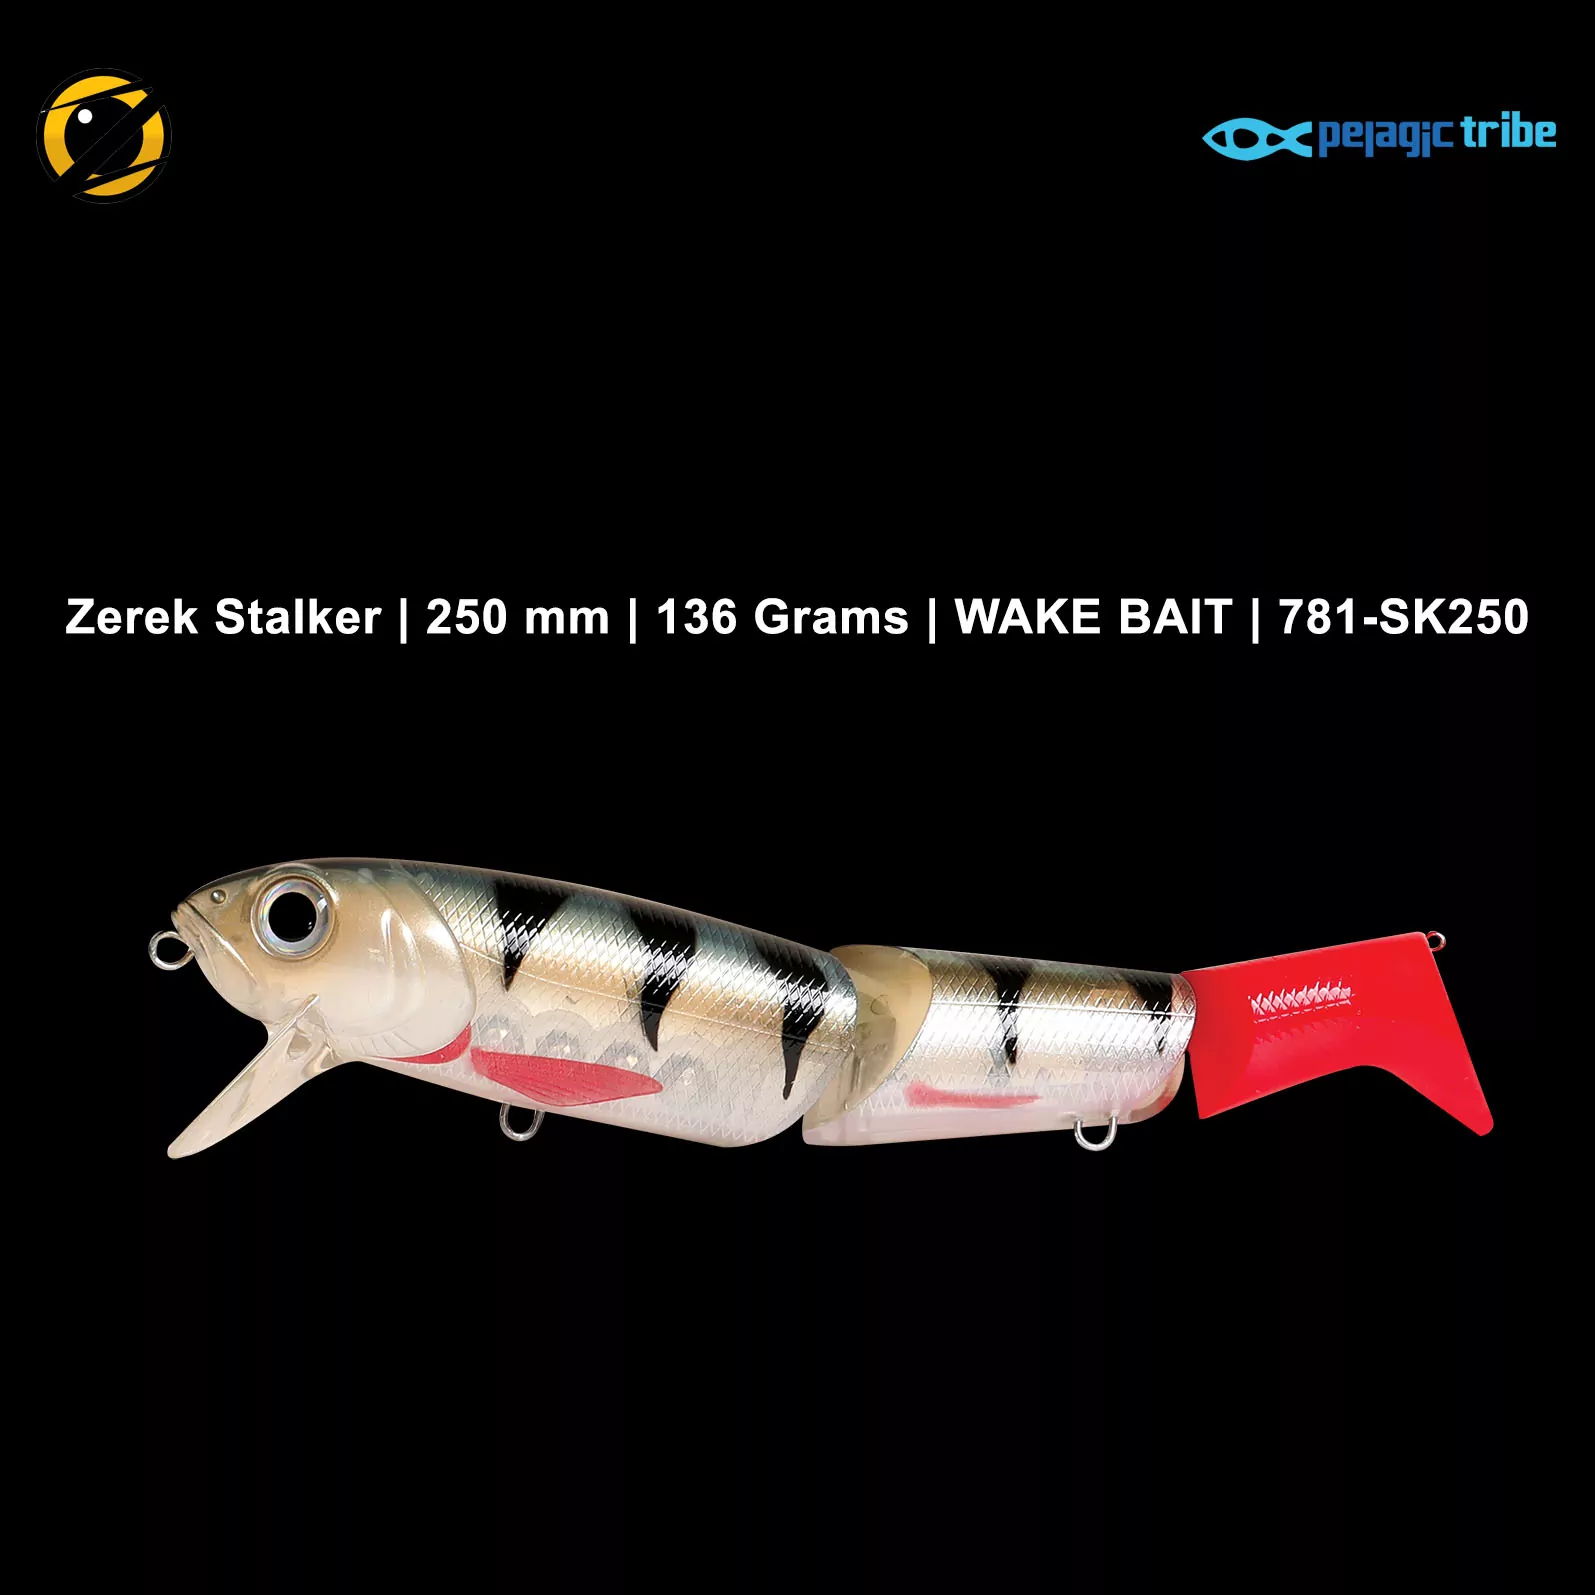 Zerek Stalker, 250 mm, 136 Grams, WAKE BAIT